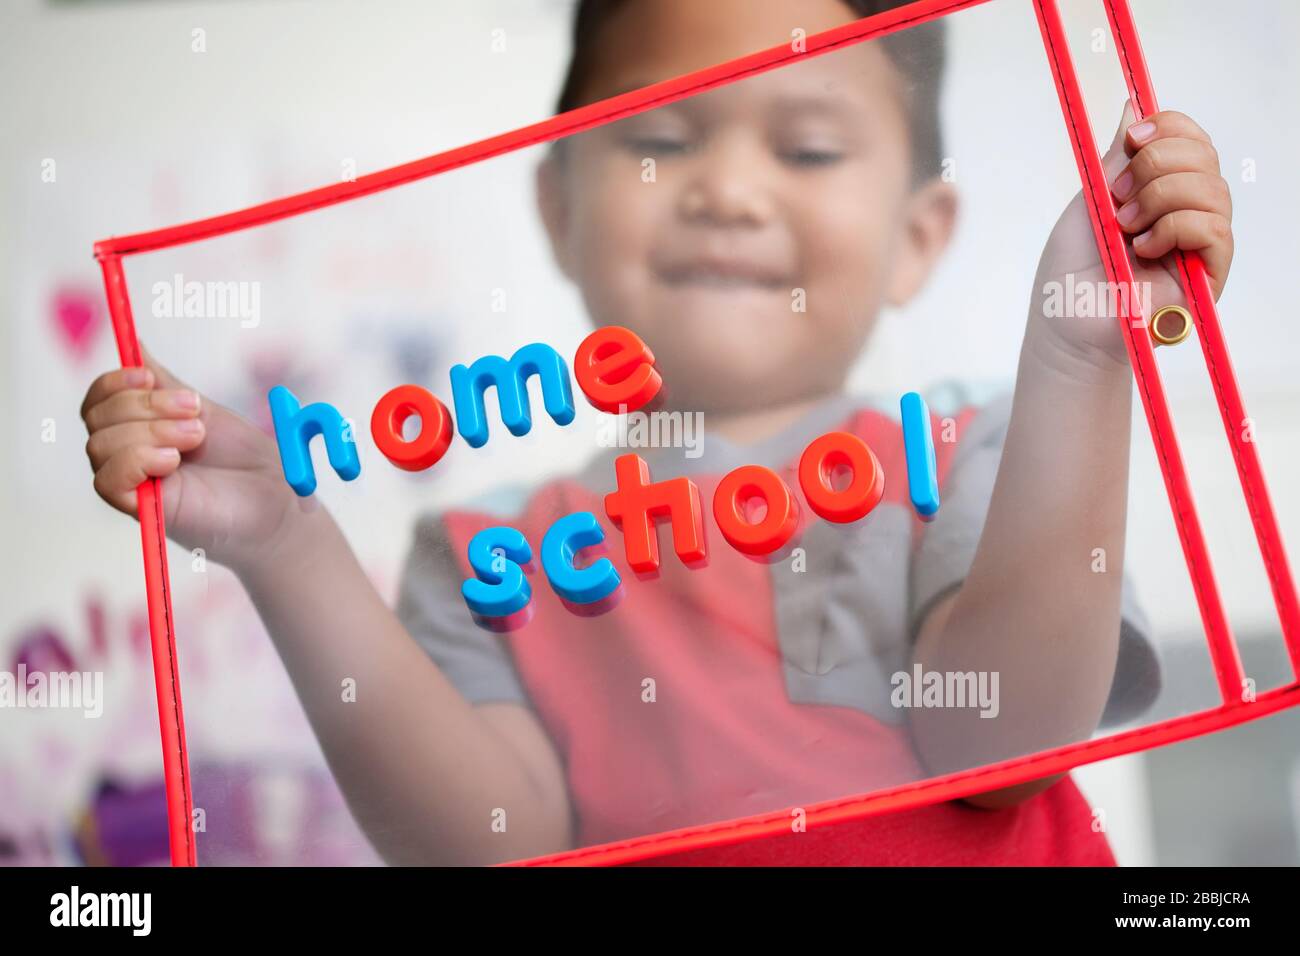 Un niño de 4 años con una sonrisa en la cara está feliz de comenzar la escuela en casa. Foto de stock